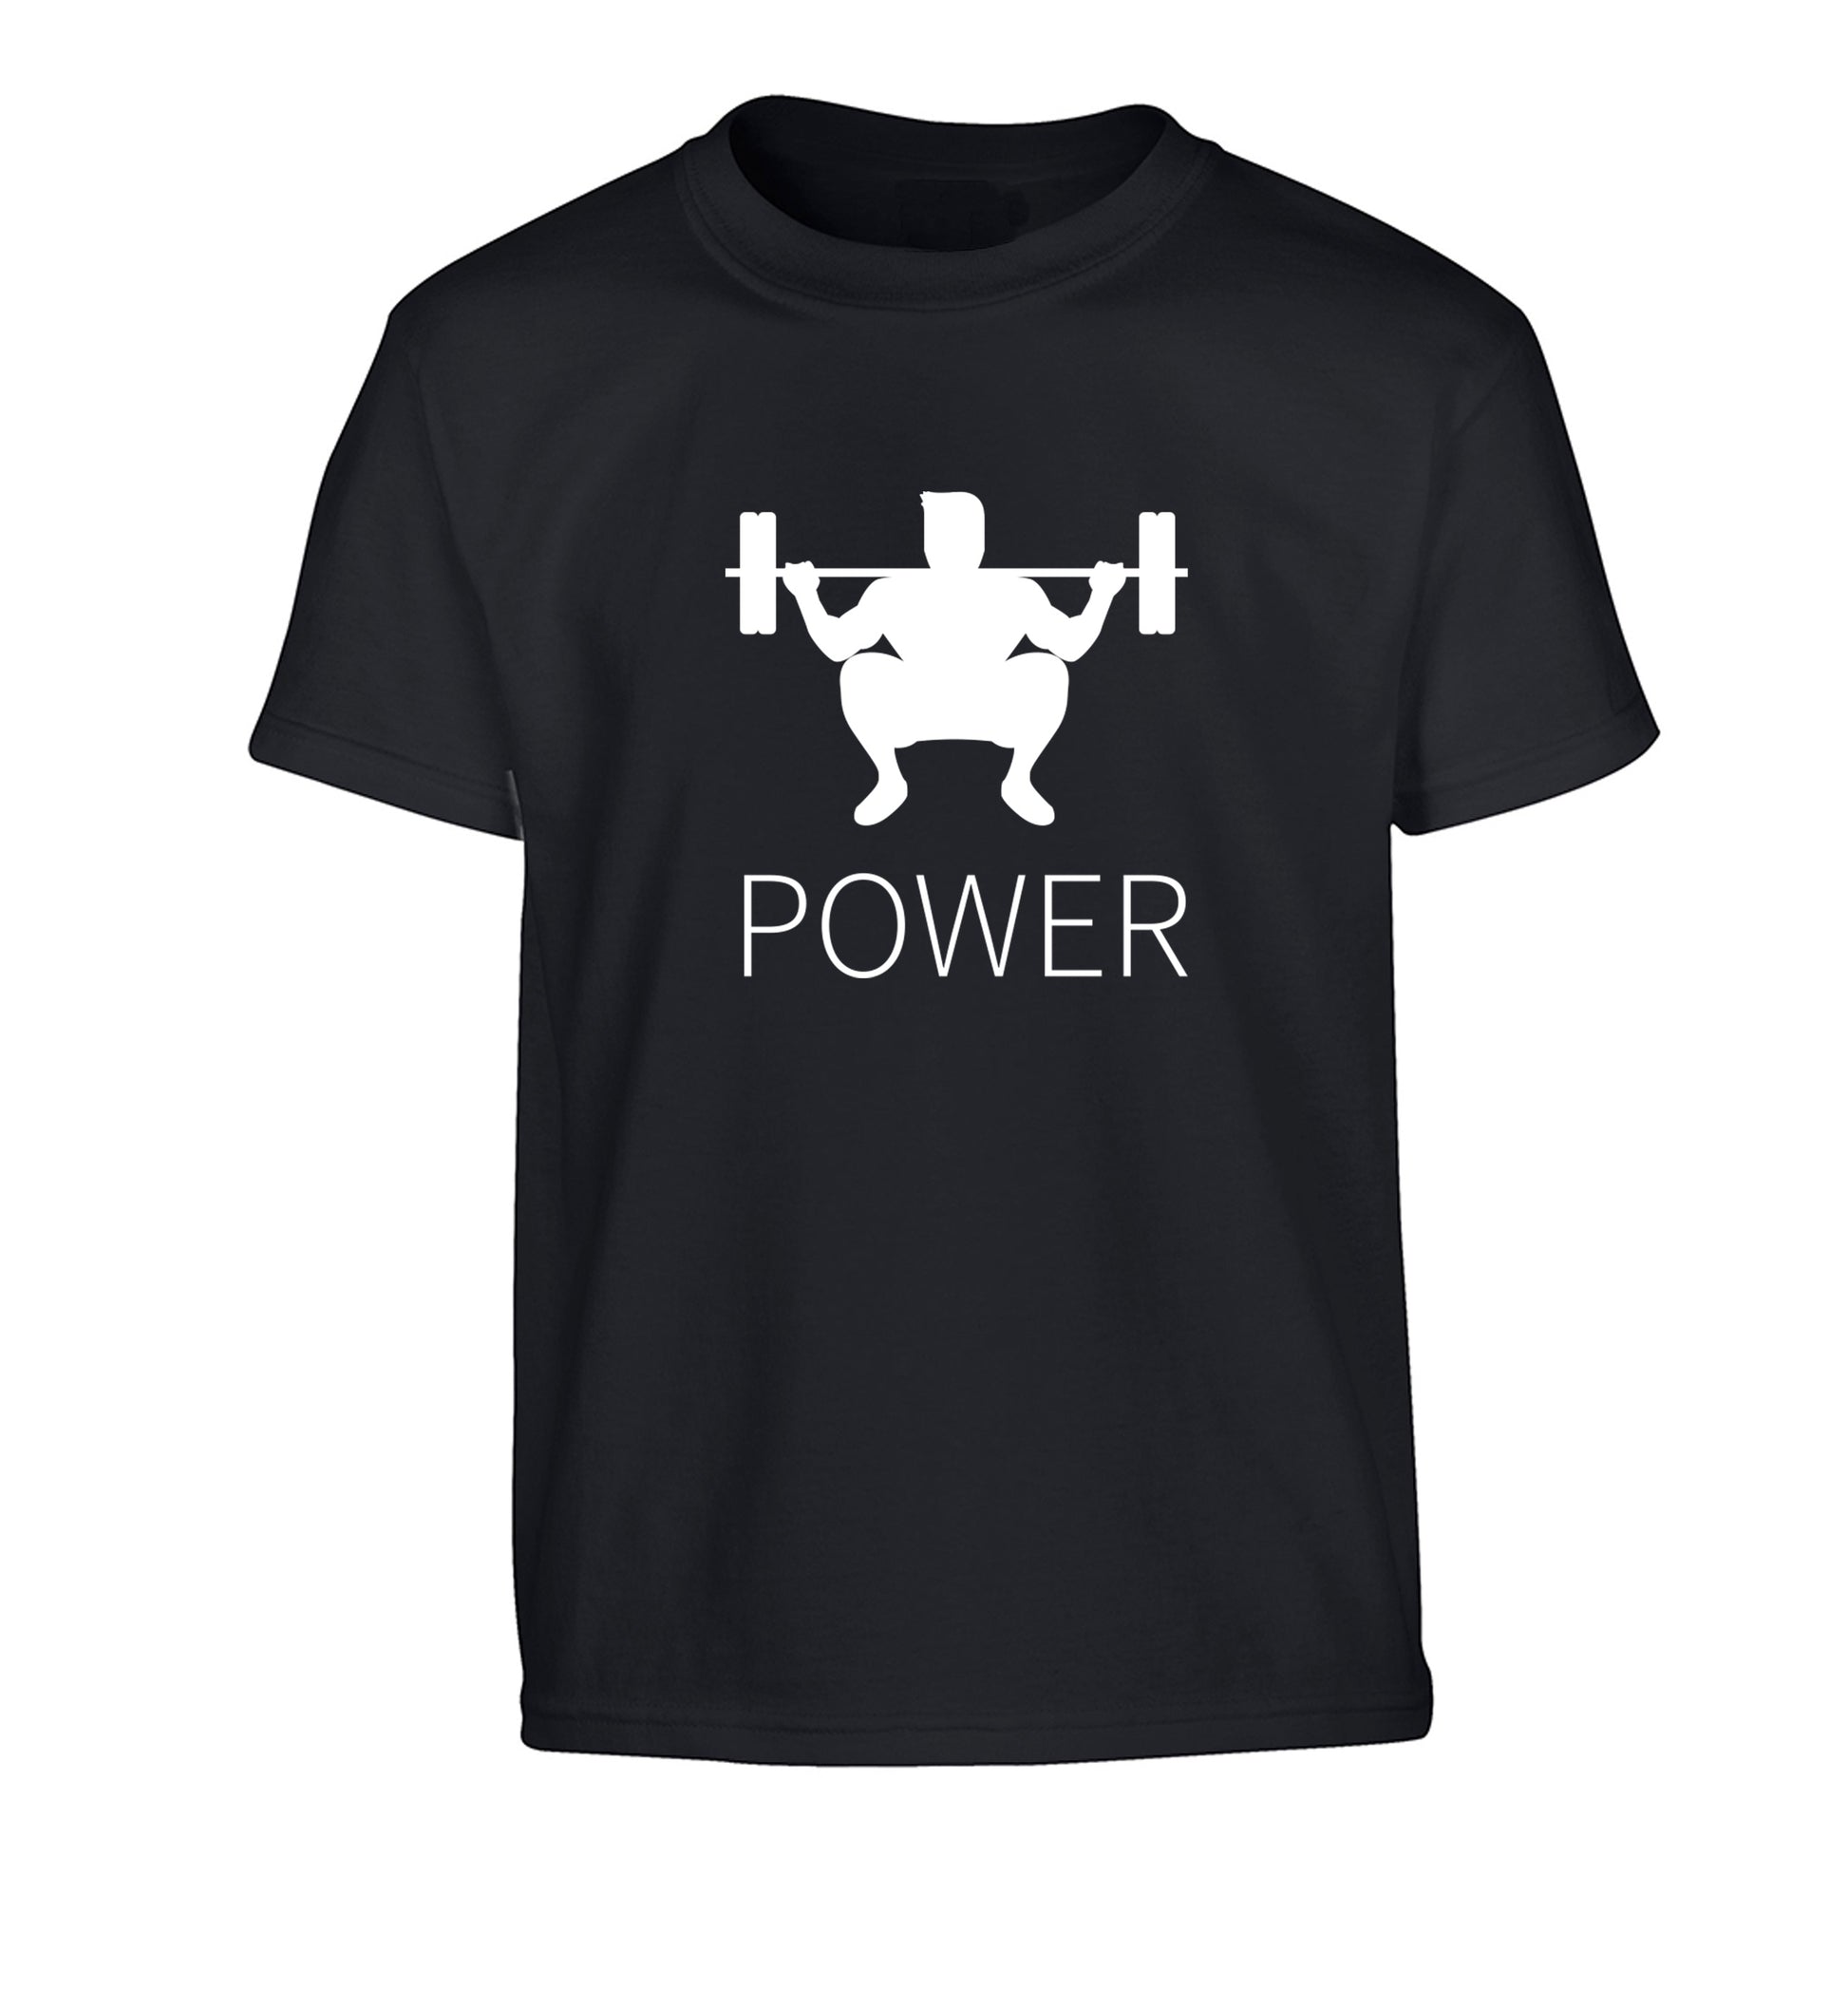 Lift power Children's black Tshirt 12-13 Years